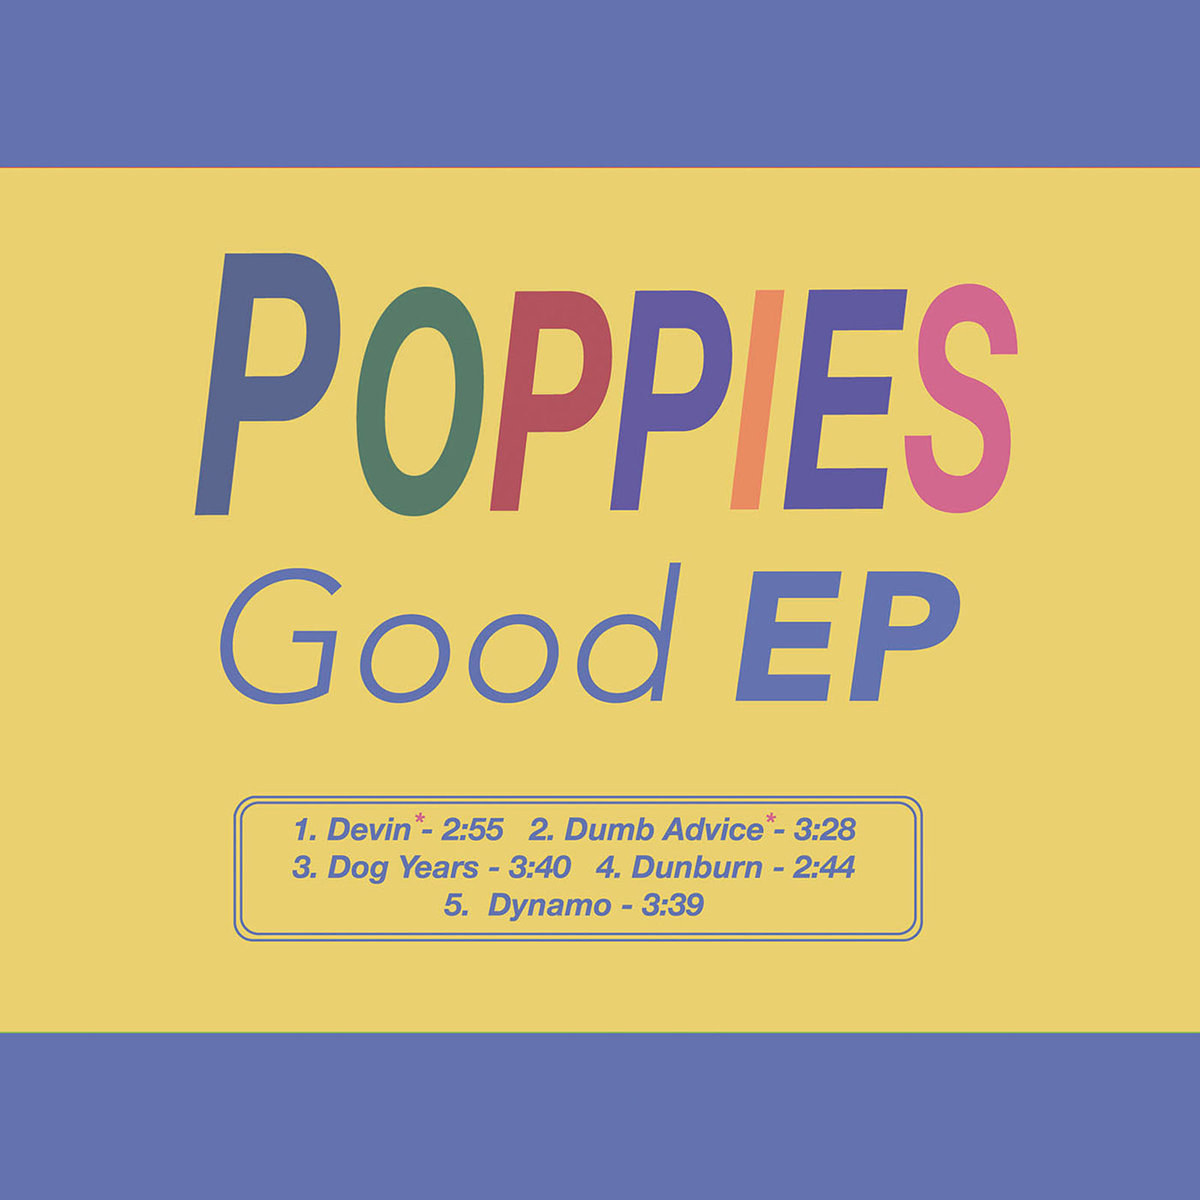 Good EP - Poppies